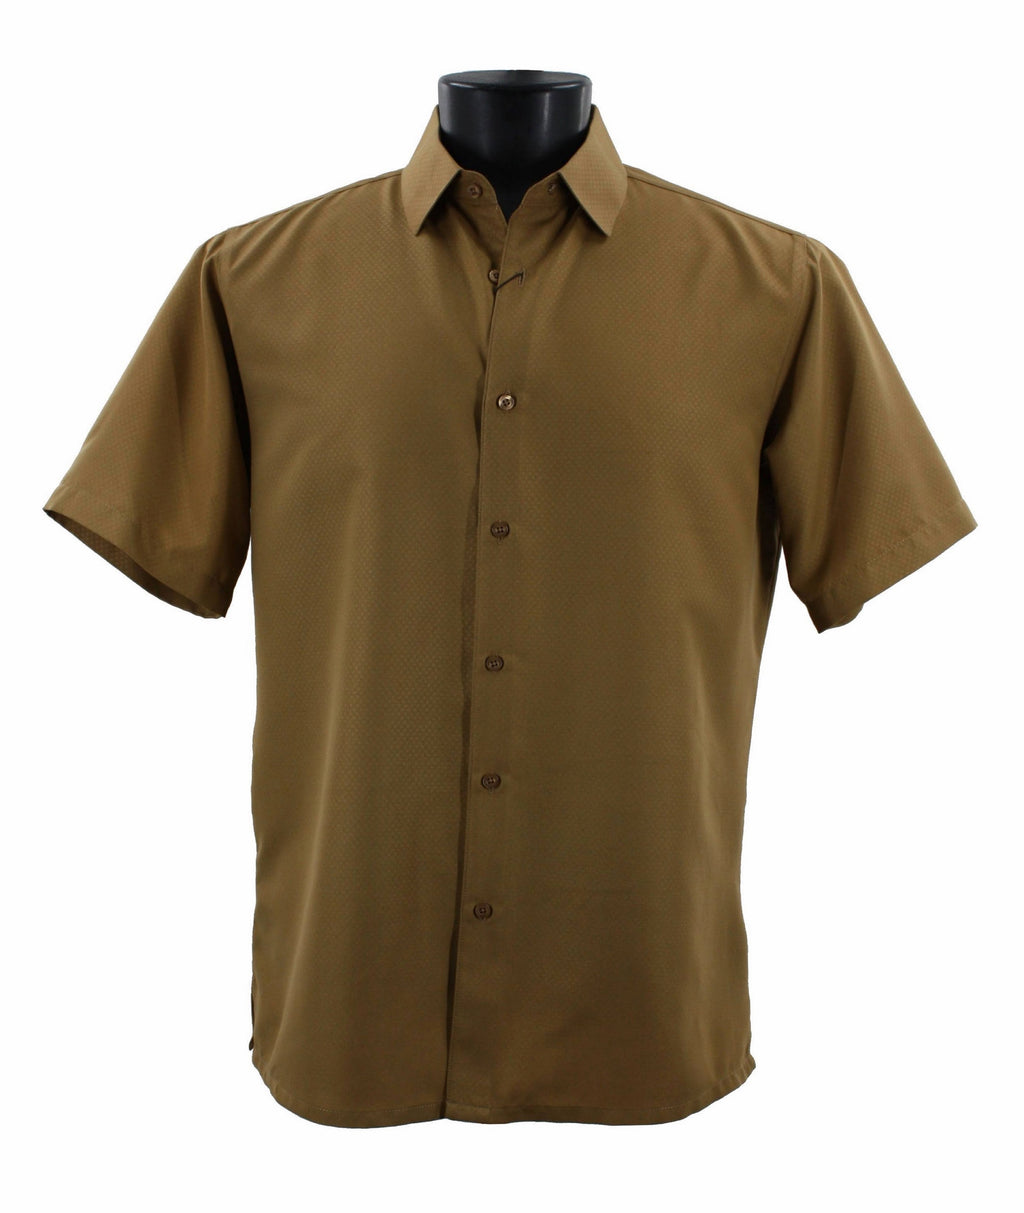 Sangi Short Sleeve Shirt S 2026 Gold